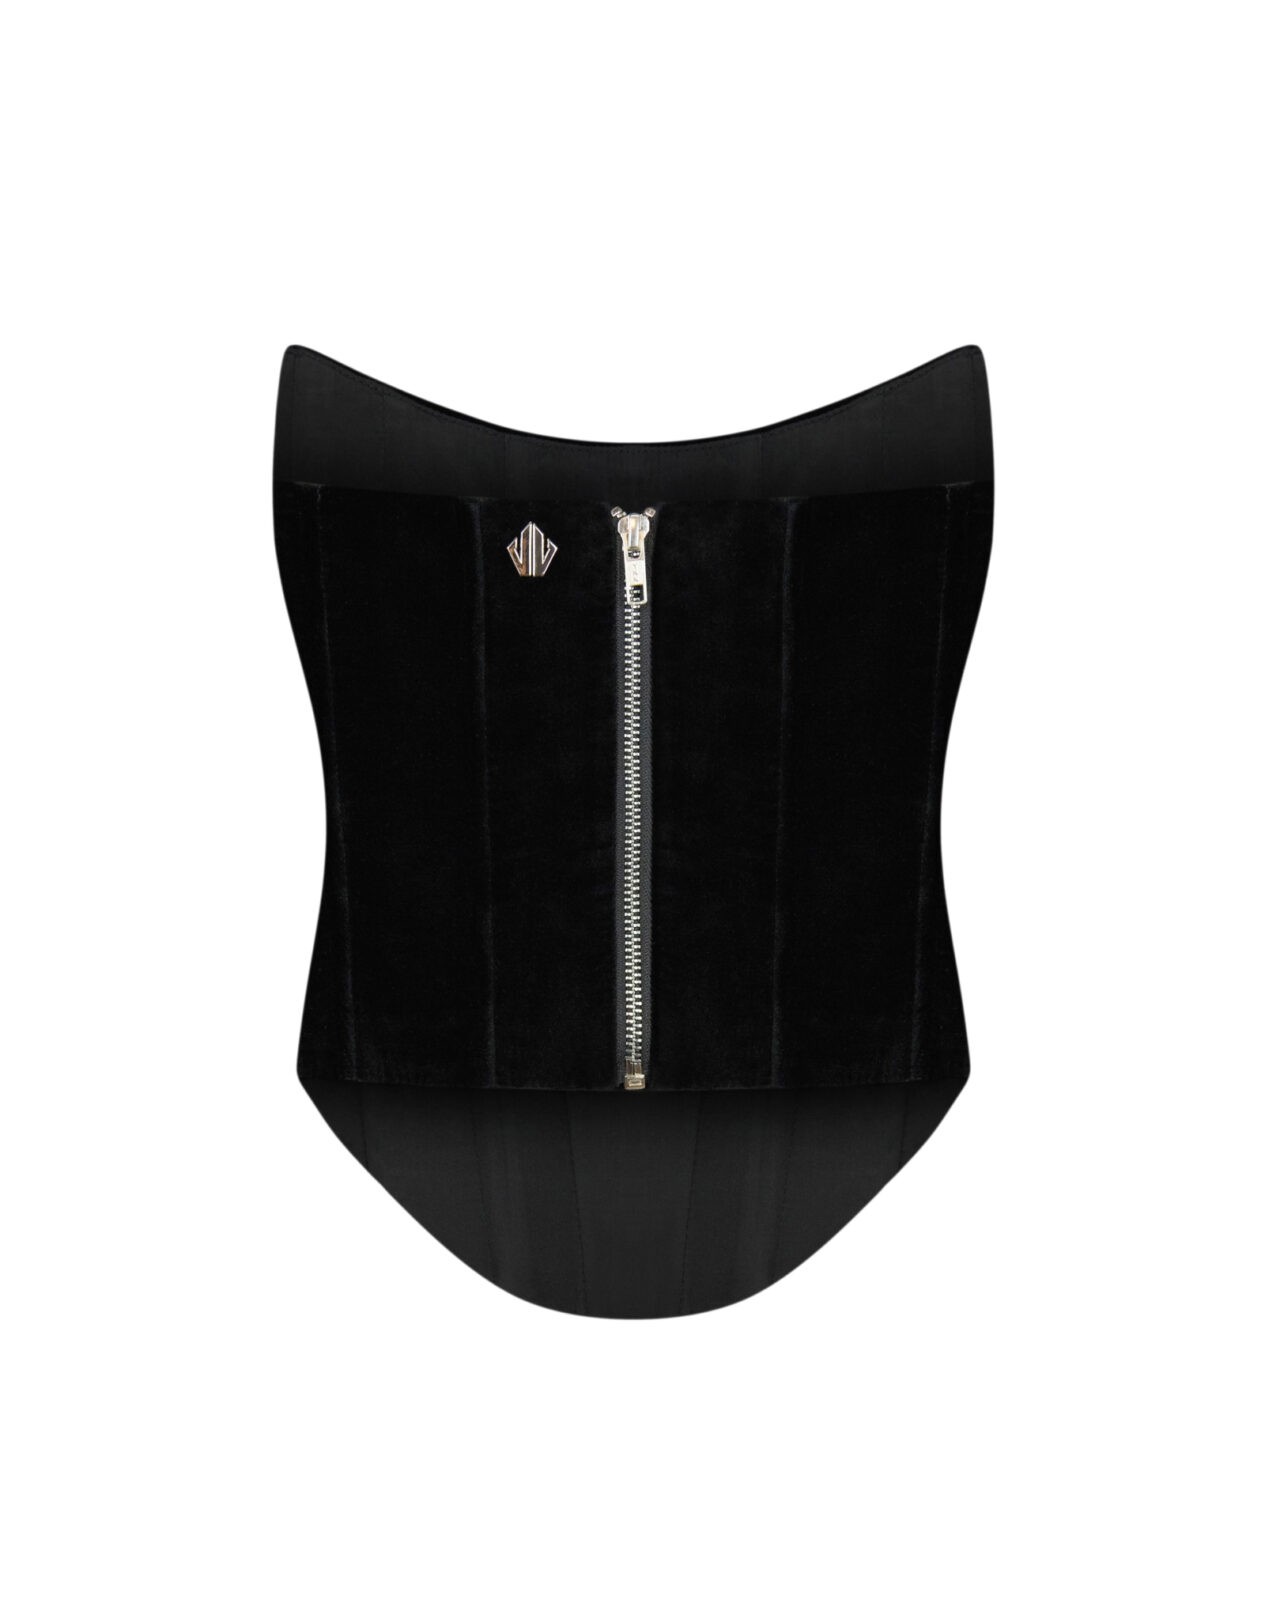 Velvet black corset